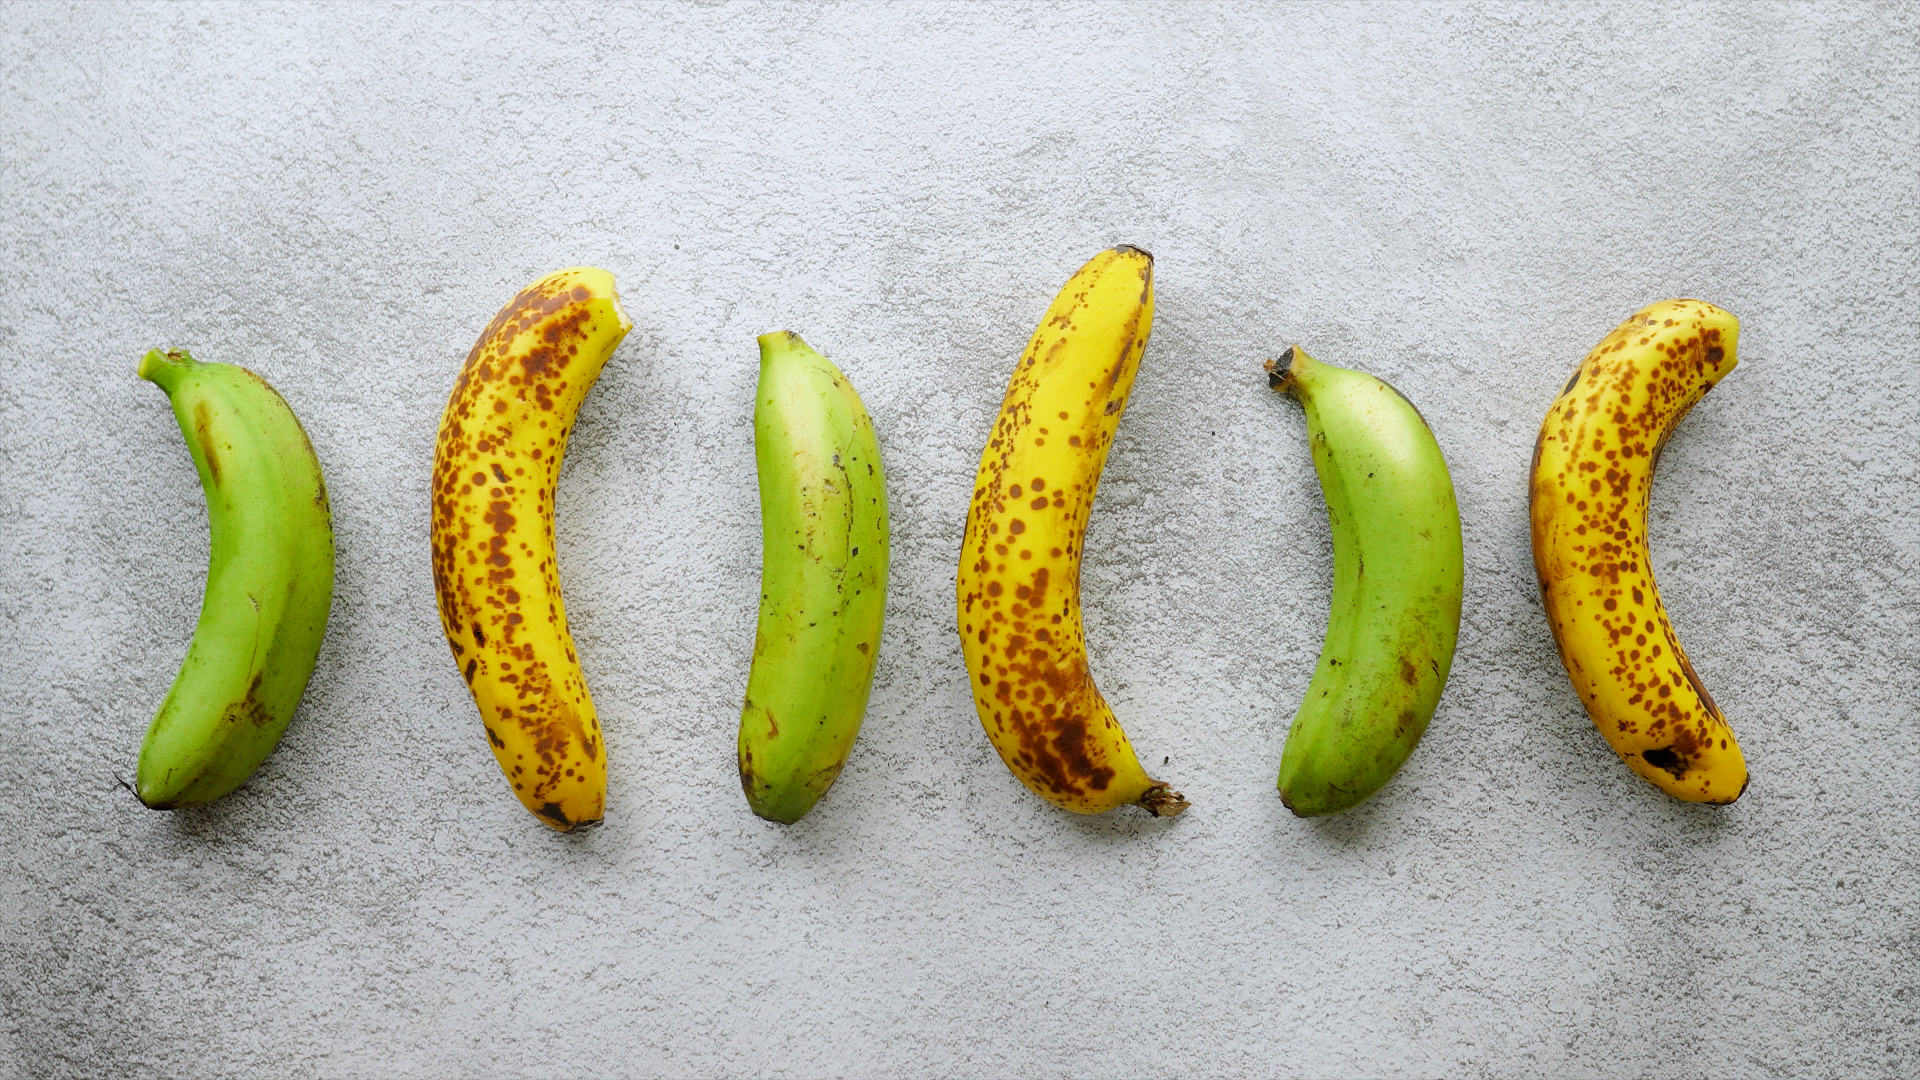 sudah-tahu-belum-ternyata-beda-warna-buah-pisang-berbeda-juga-kandungan-gizinya